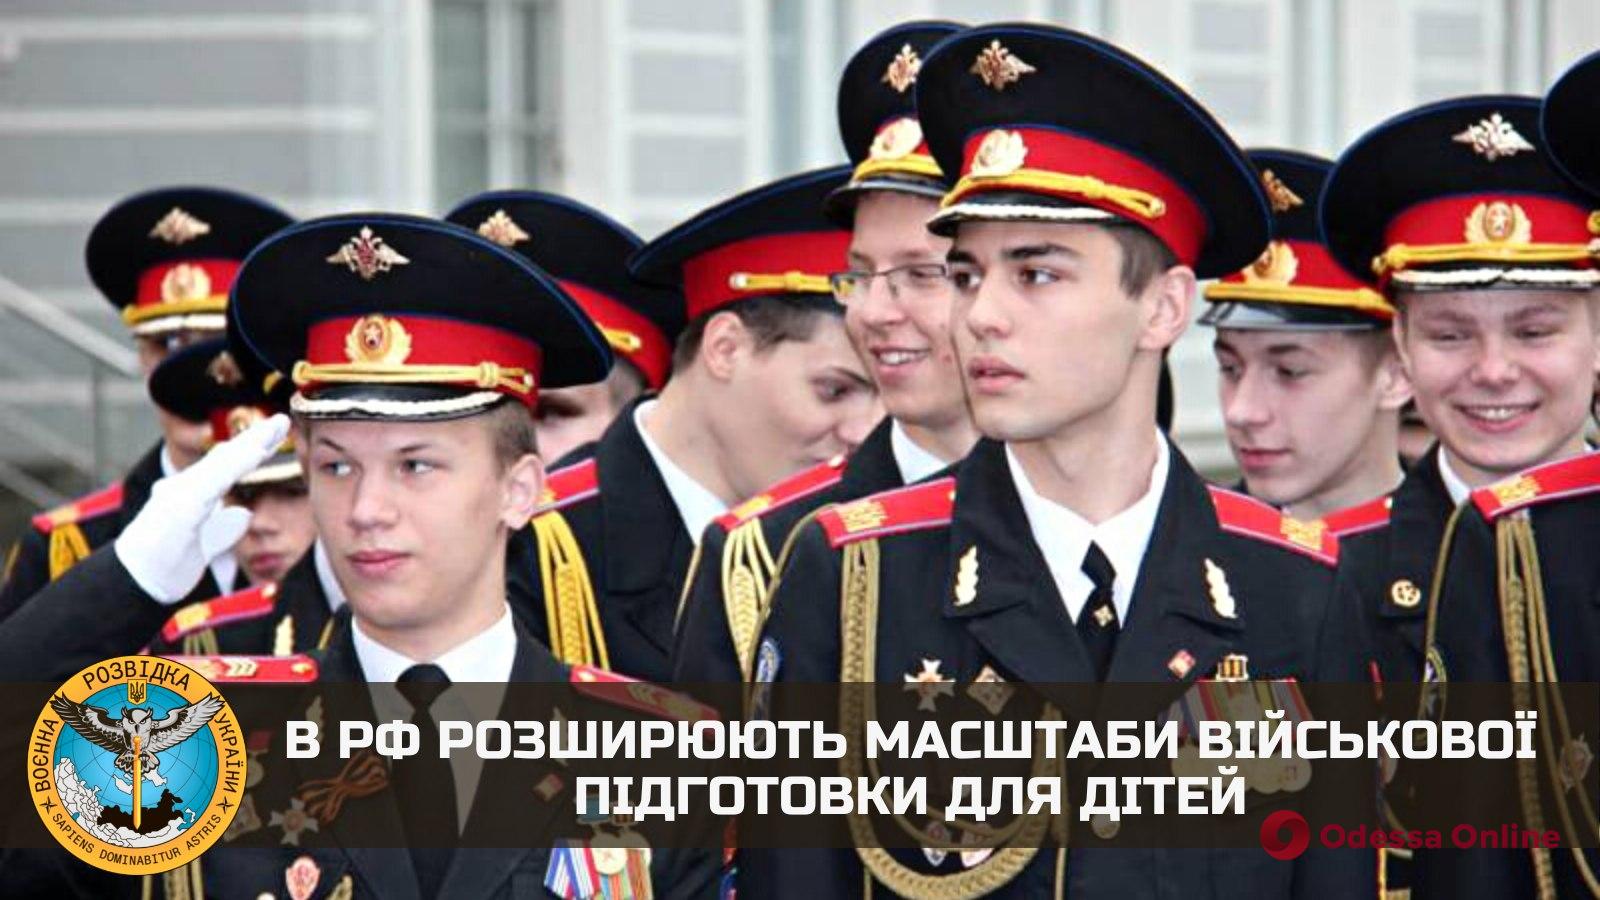 На росії розширюють масштаби військової підготовки для дітей, — розвідка